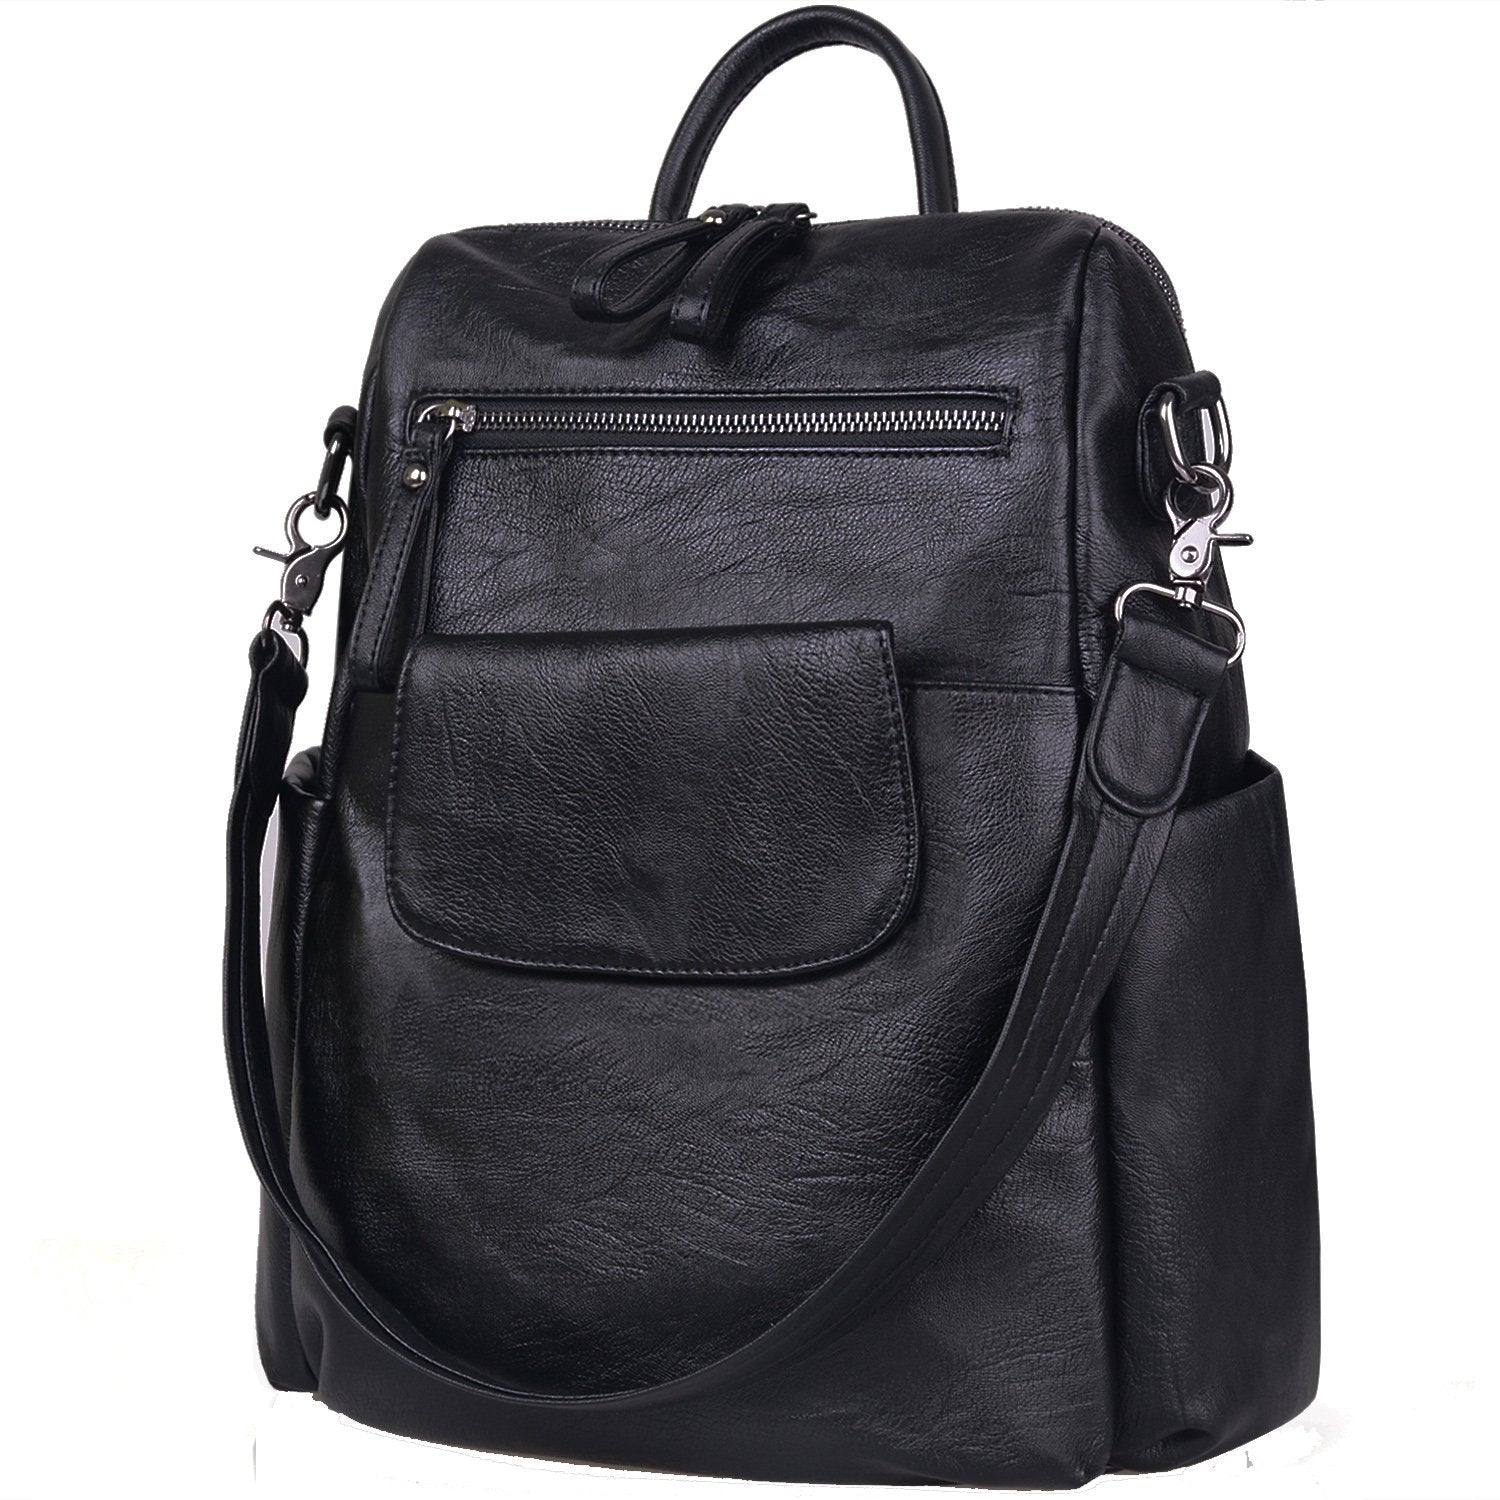 Soft PU Leather Backpack for Women Satchel Shoulder Bag - ebowsos